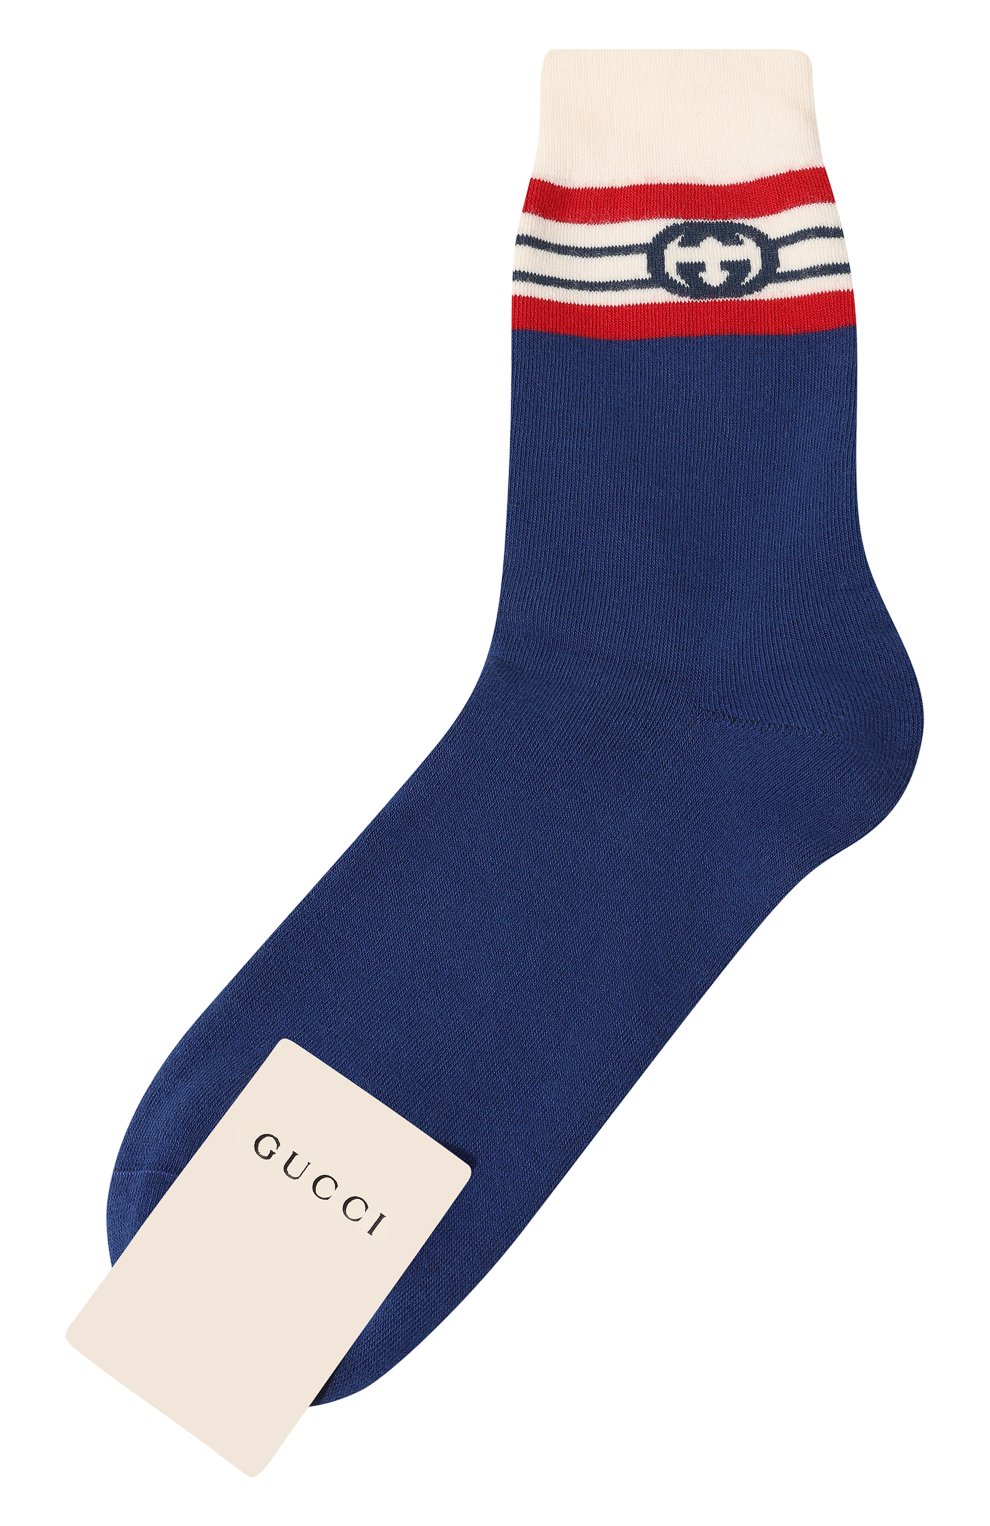 Женские хлопковые носки GUCCI синего цвета, арт. 676824 4G293 | Фото 1 (Материал внешний: Хлопок)